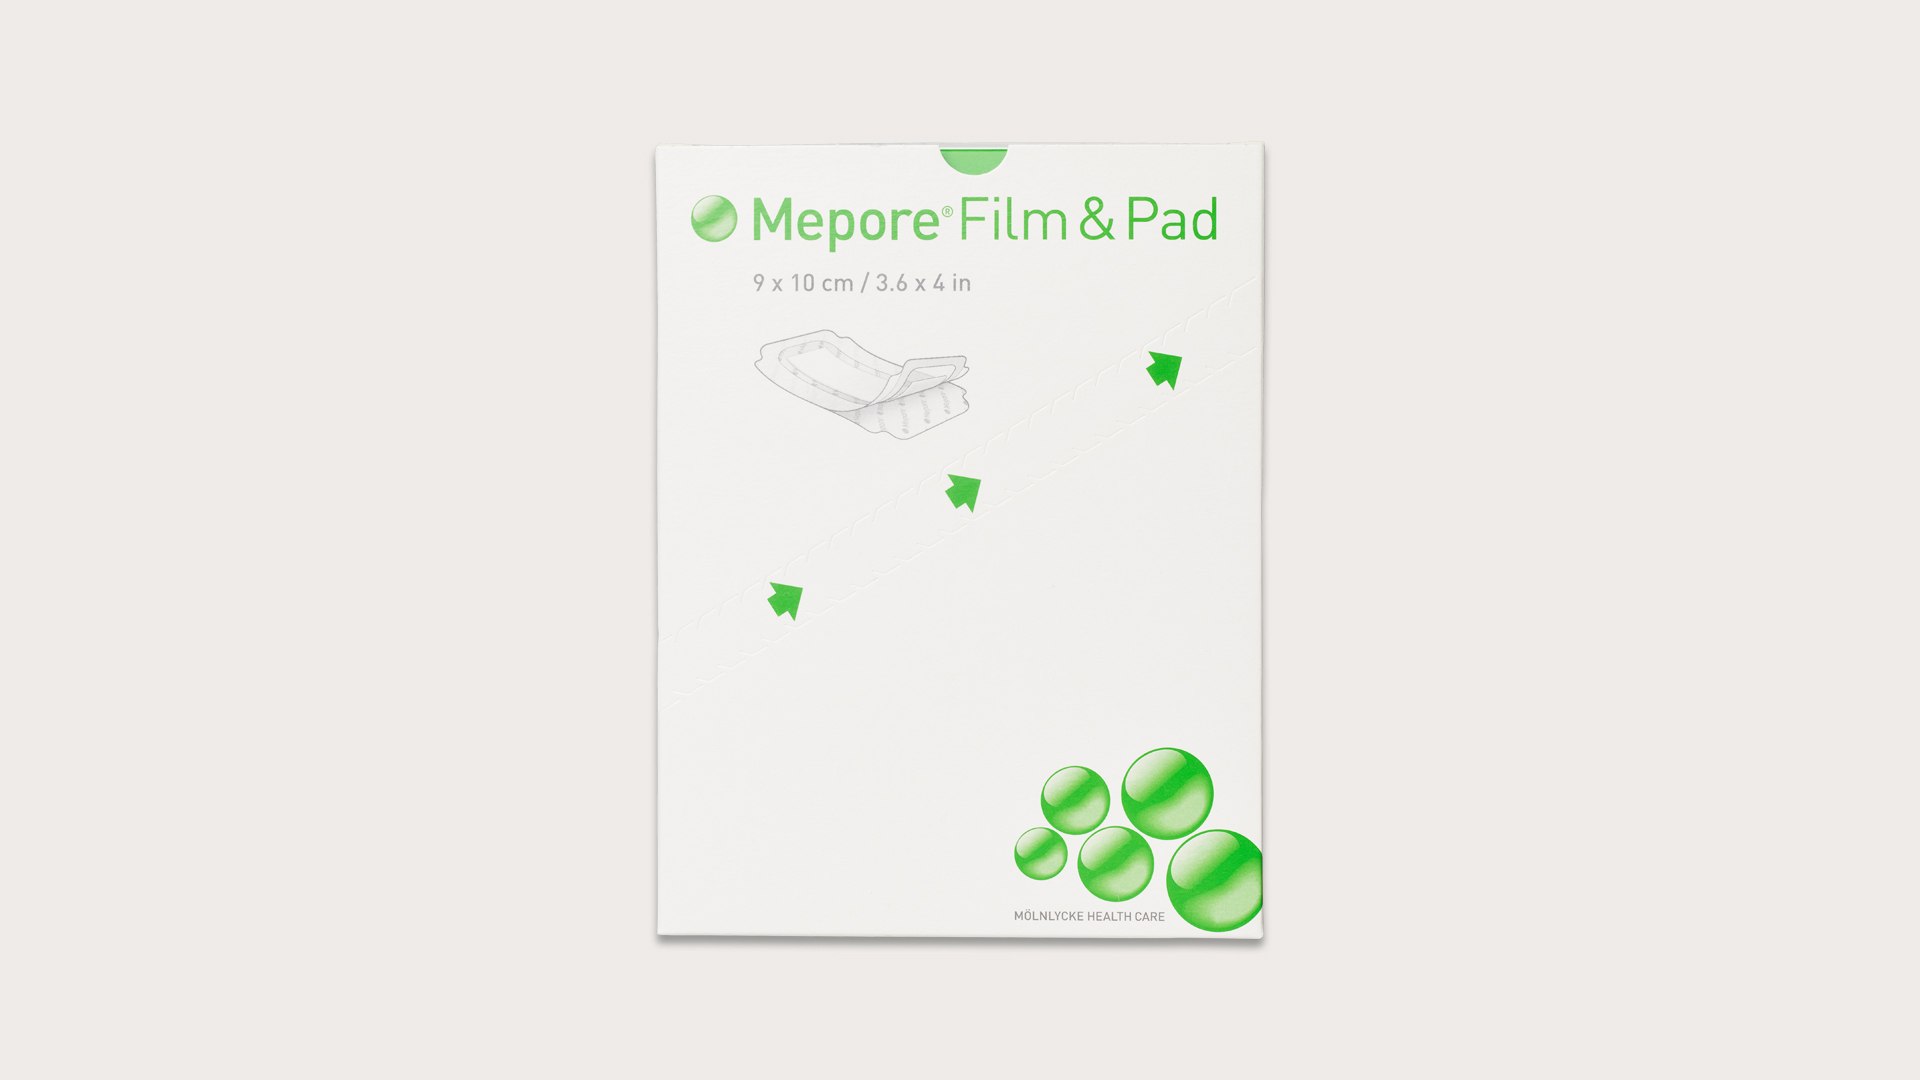 Mepore Film & Pad image